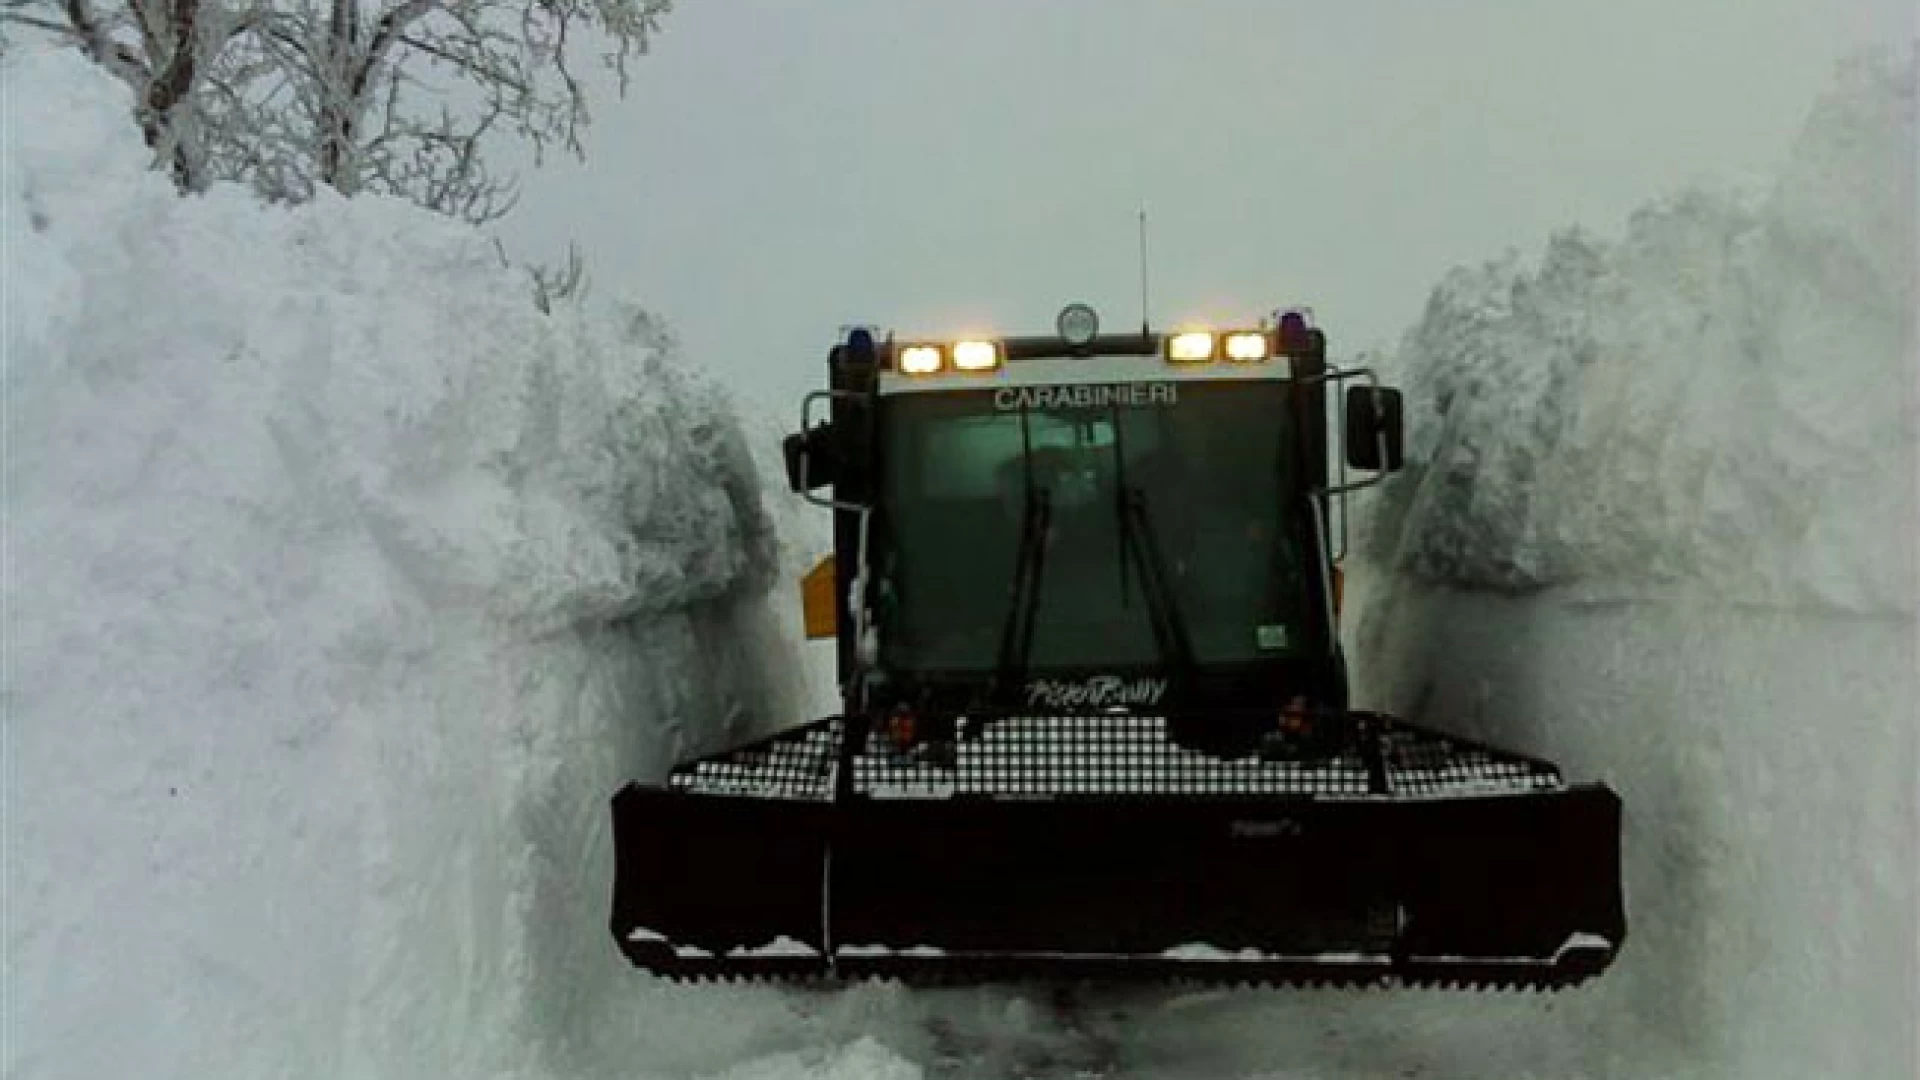 Capracotta :Carabinieri intervengono con il gatto delle nevi per soccorrere cinque autovetture rimaste bloccate in località Monte Capraro.